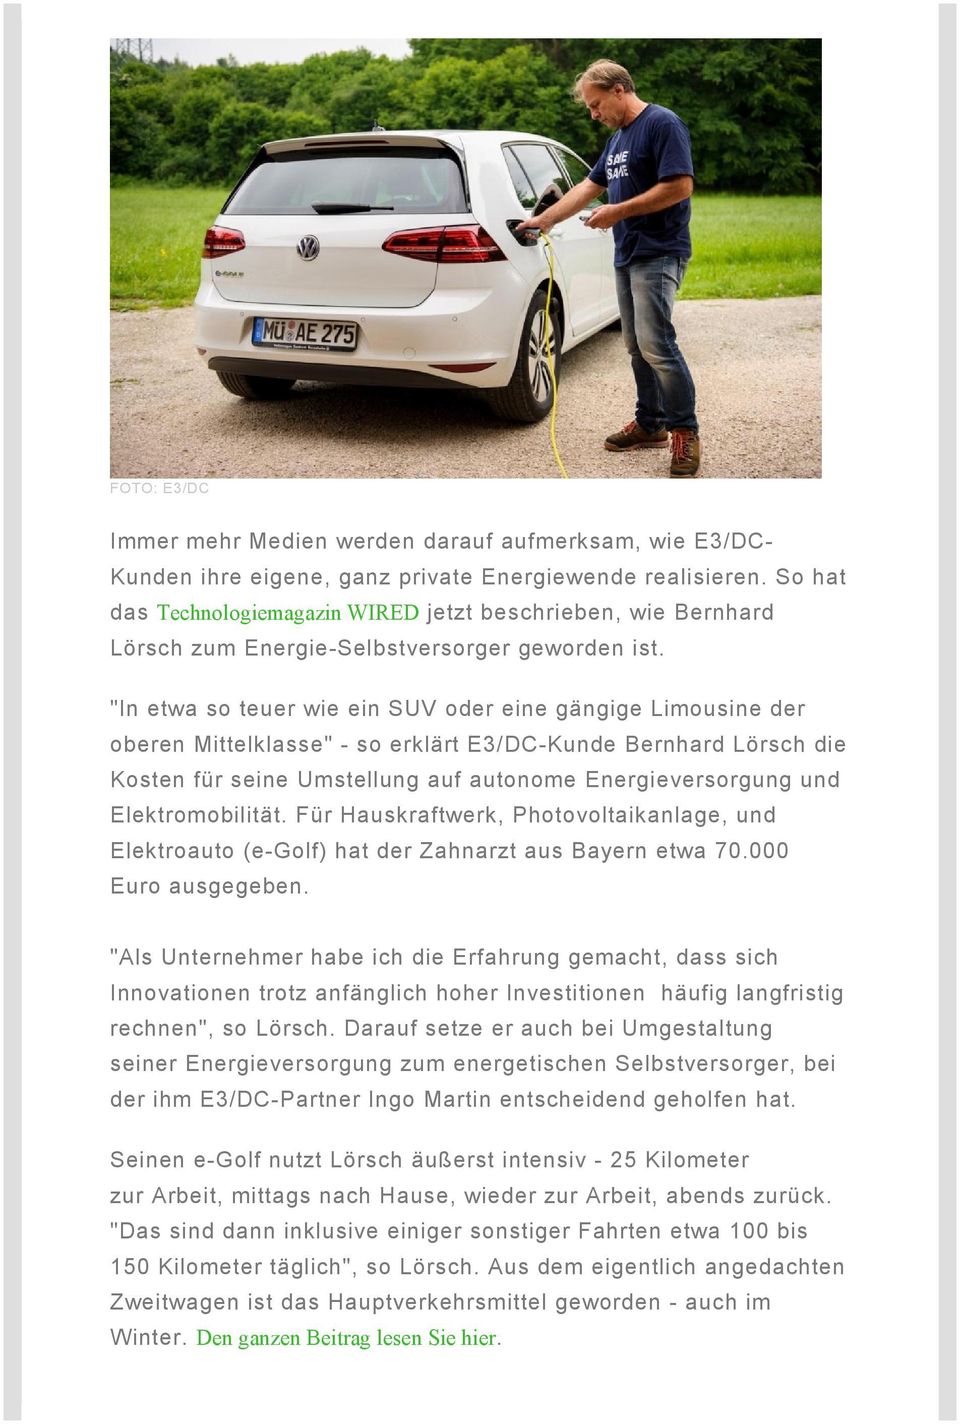 "In etwa so teuer wie ein SUV oder eine gängige Limousine der oberen Mittelklasse" - so erklärt E3/DC-Kunde Bernhard Lörsch die Kosten für seine Umstellung auf autonome Energieversorgung und